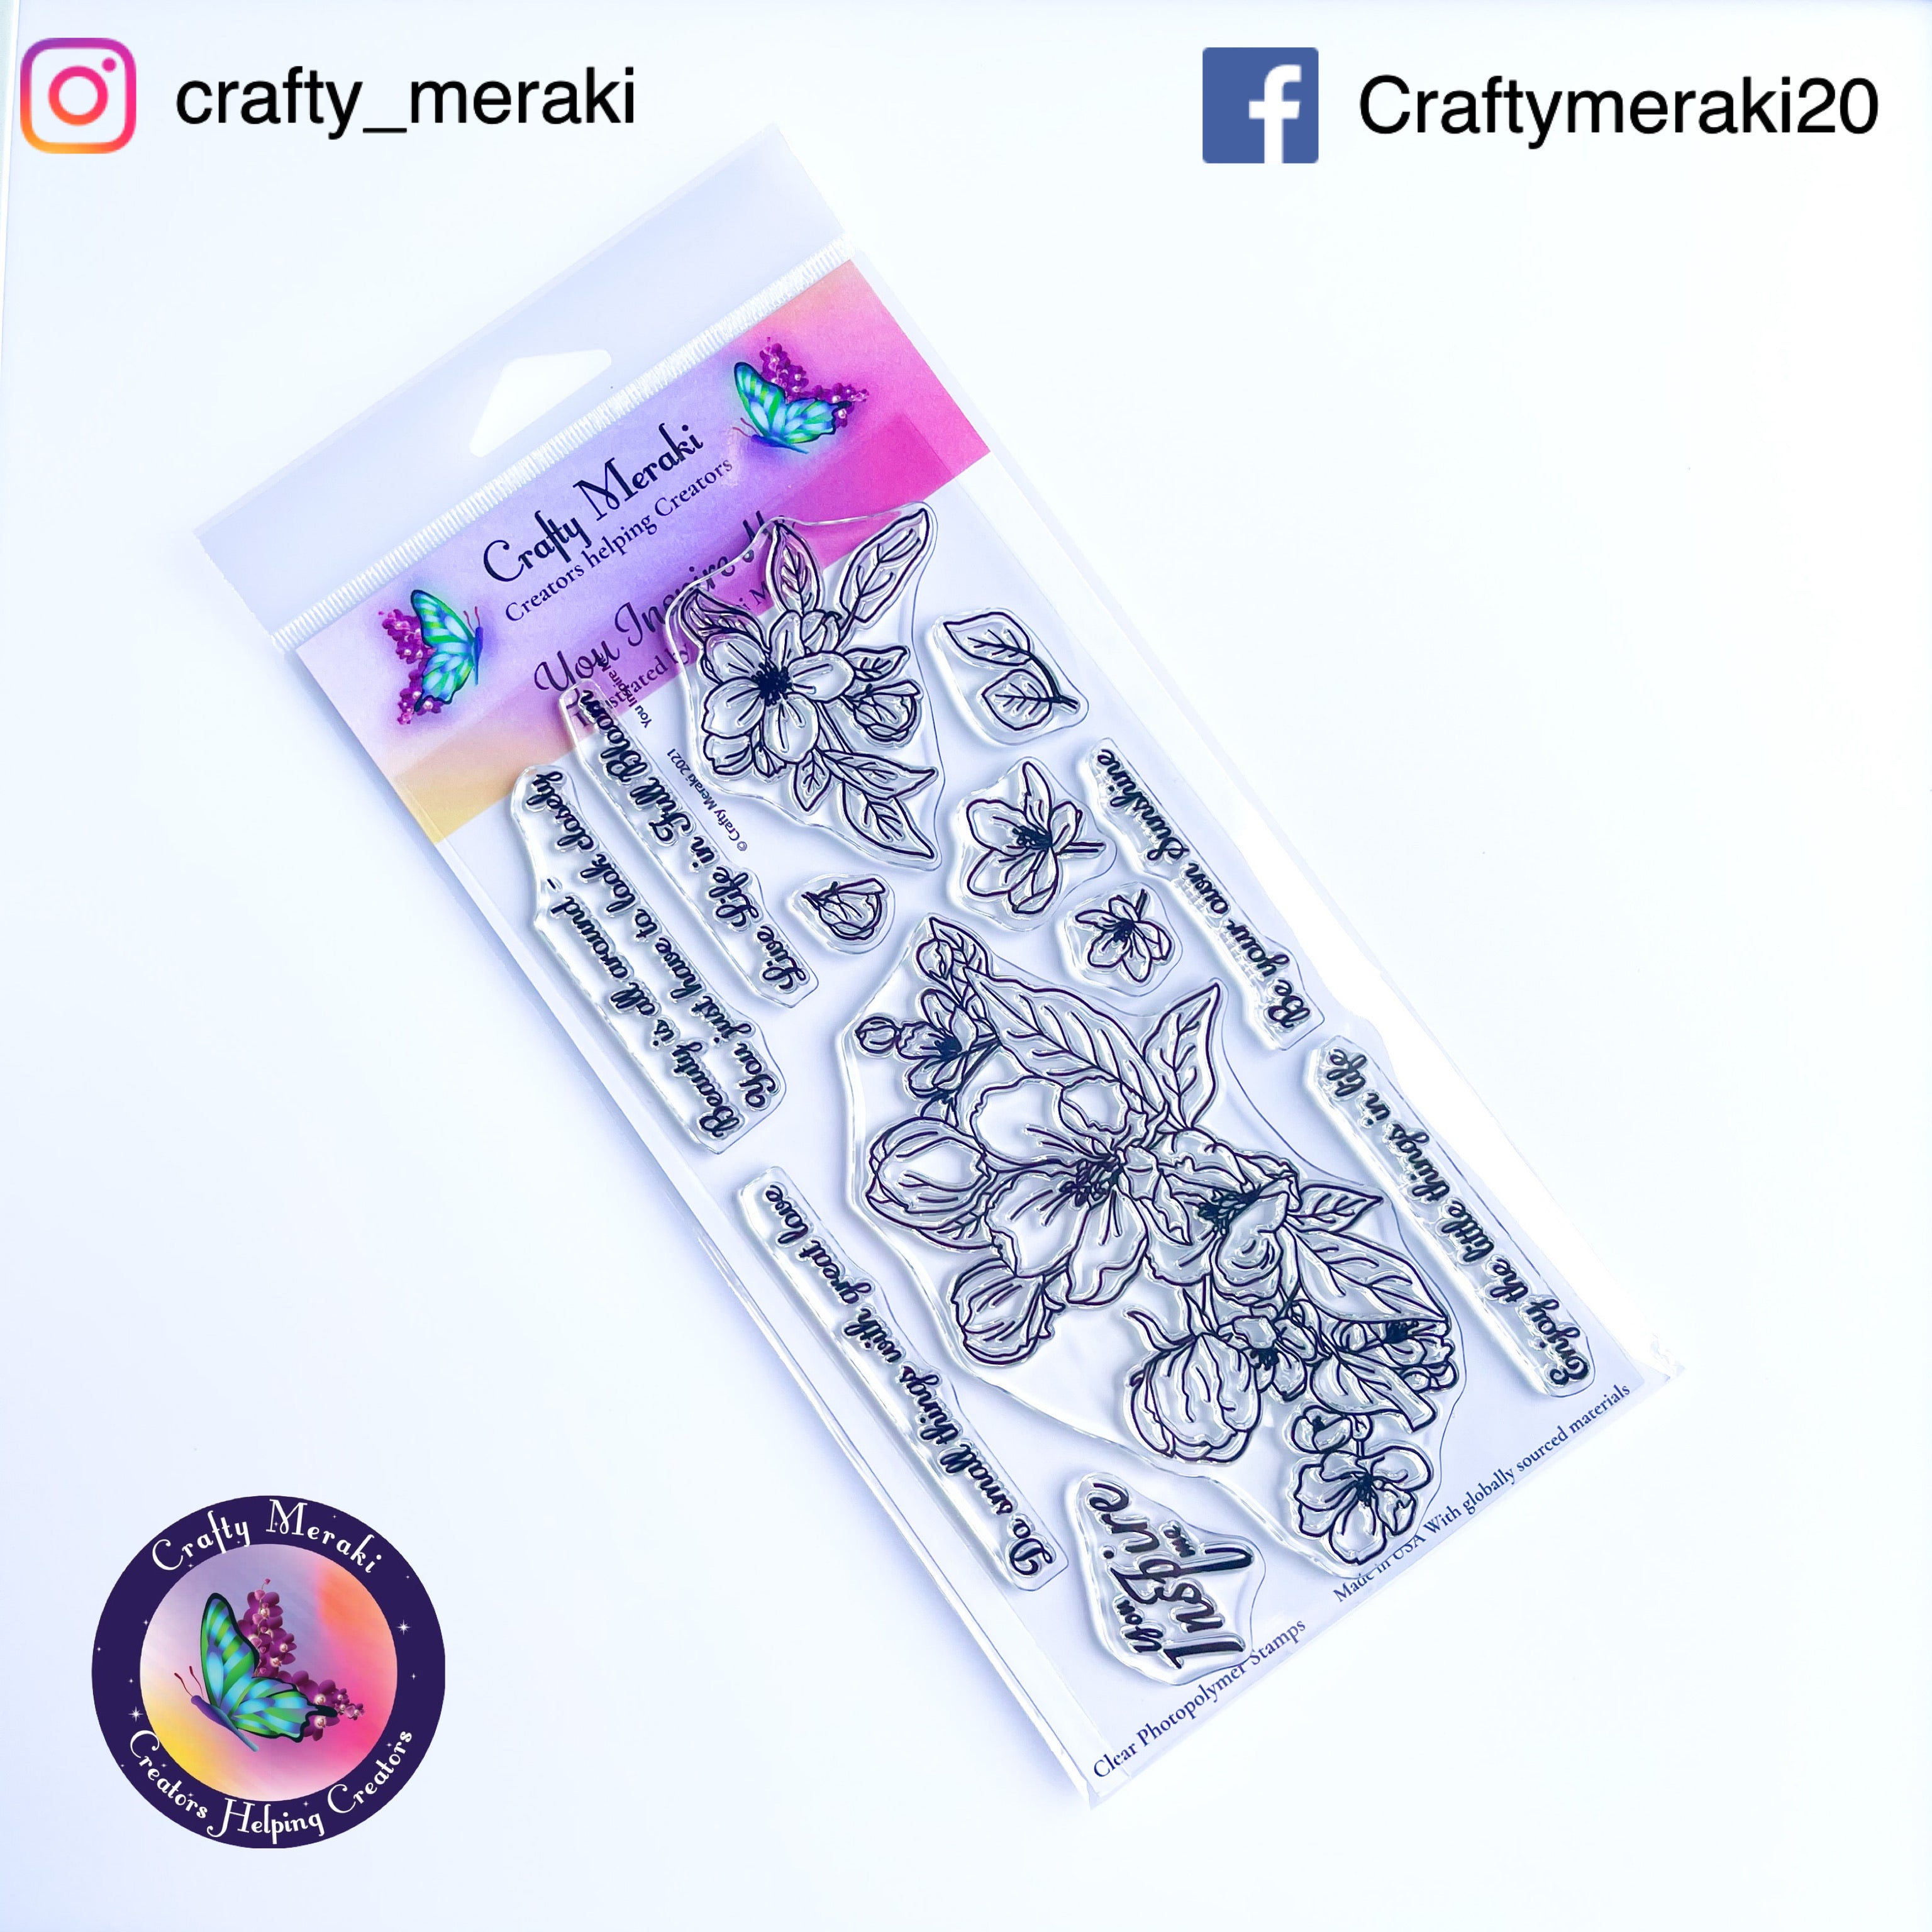 Crafty Meraki You Inspire Me Stamp set - Crafty Meraki